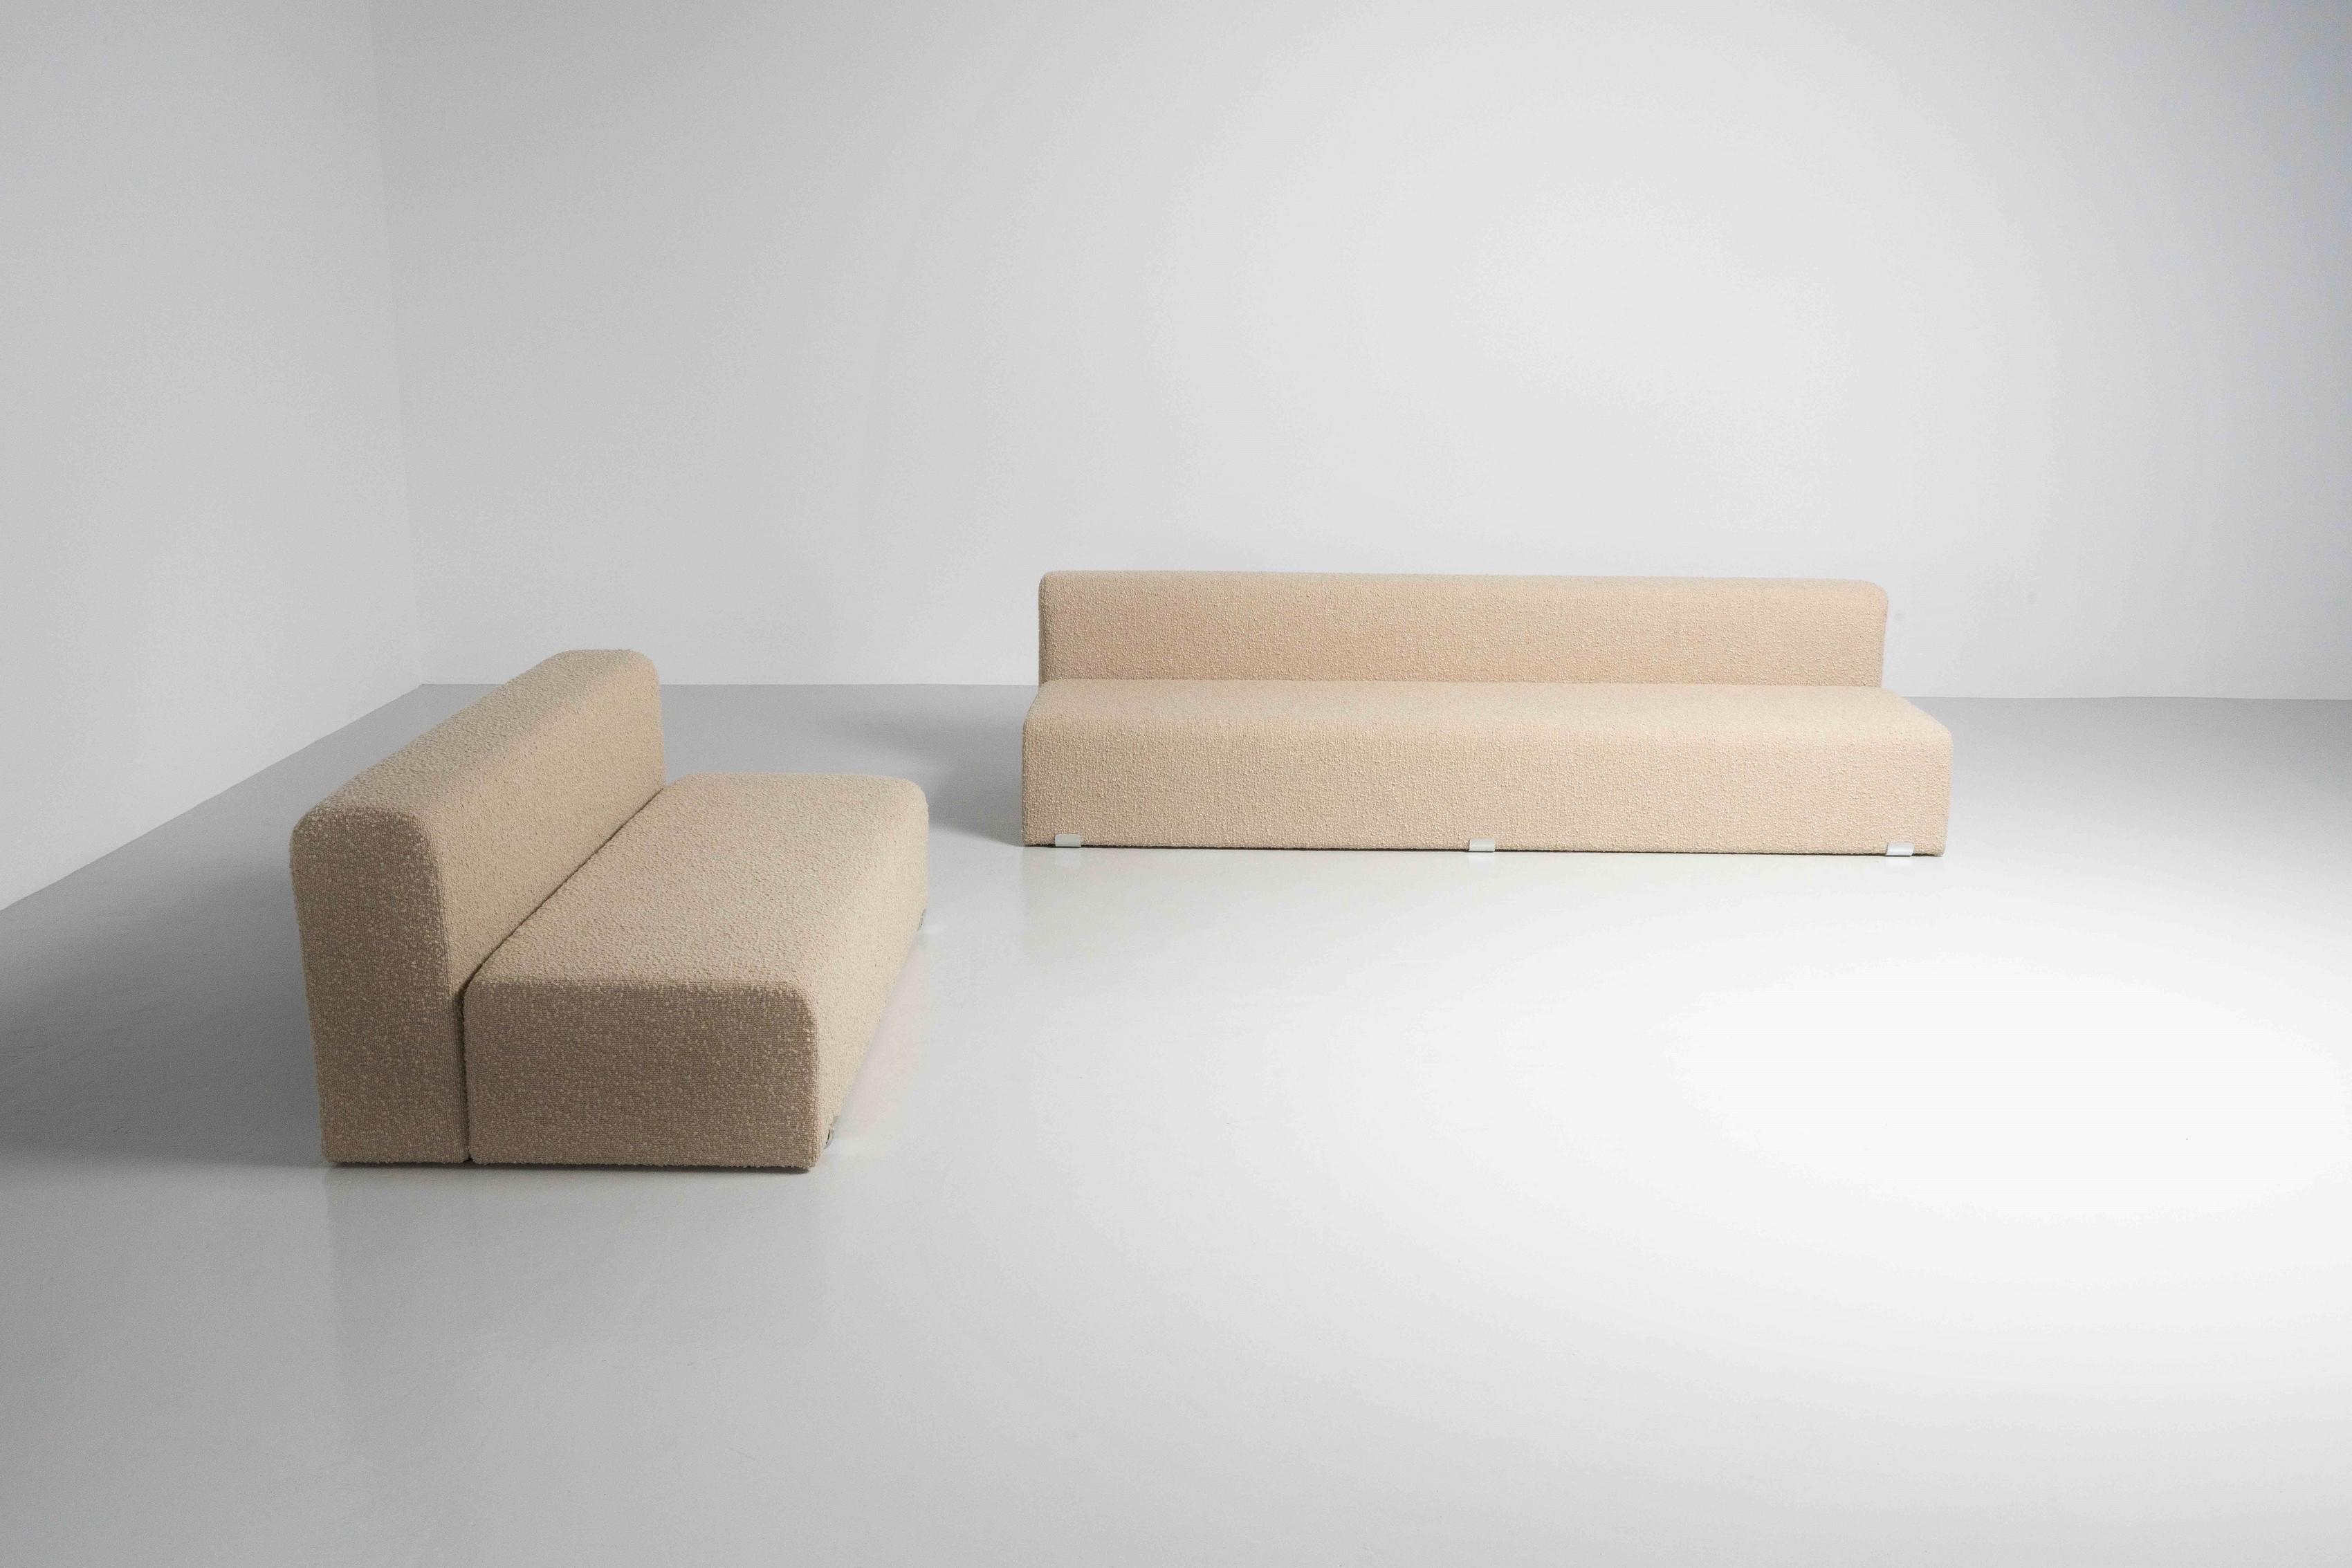 Très bel ensemble minimaliste de canapés 'Marcel' conçus par Kazuhide Takahama et produits en Italie par Gavina en 1965. Ce magnifique ensemble est en très bon état et a été retapissé par nos soins dans un bouclé italien de haute qualité de couleur